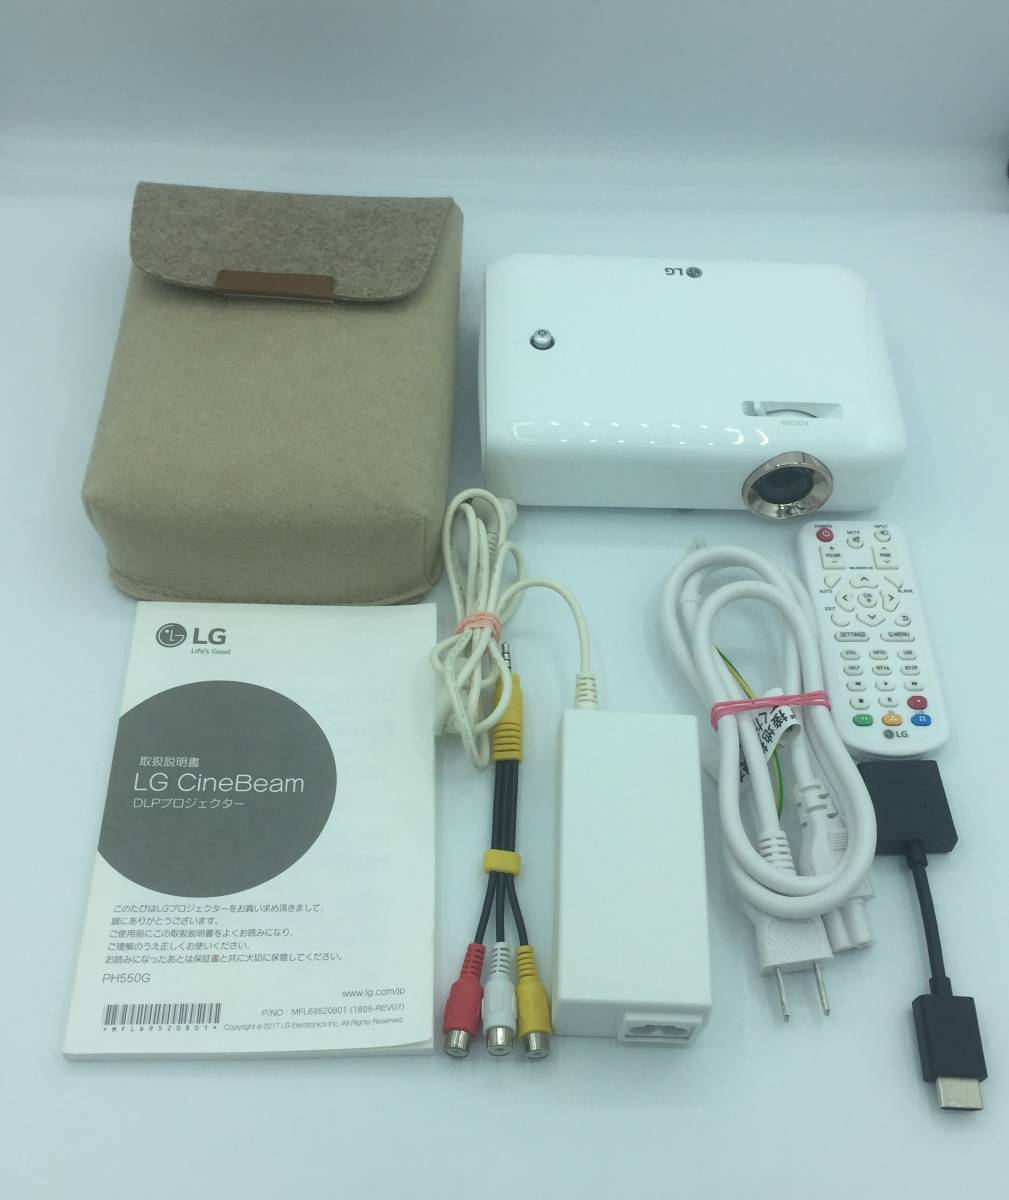 LG Electronics Japan LEDポータブル プロジェクター PH550G | www